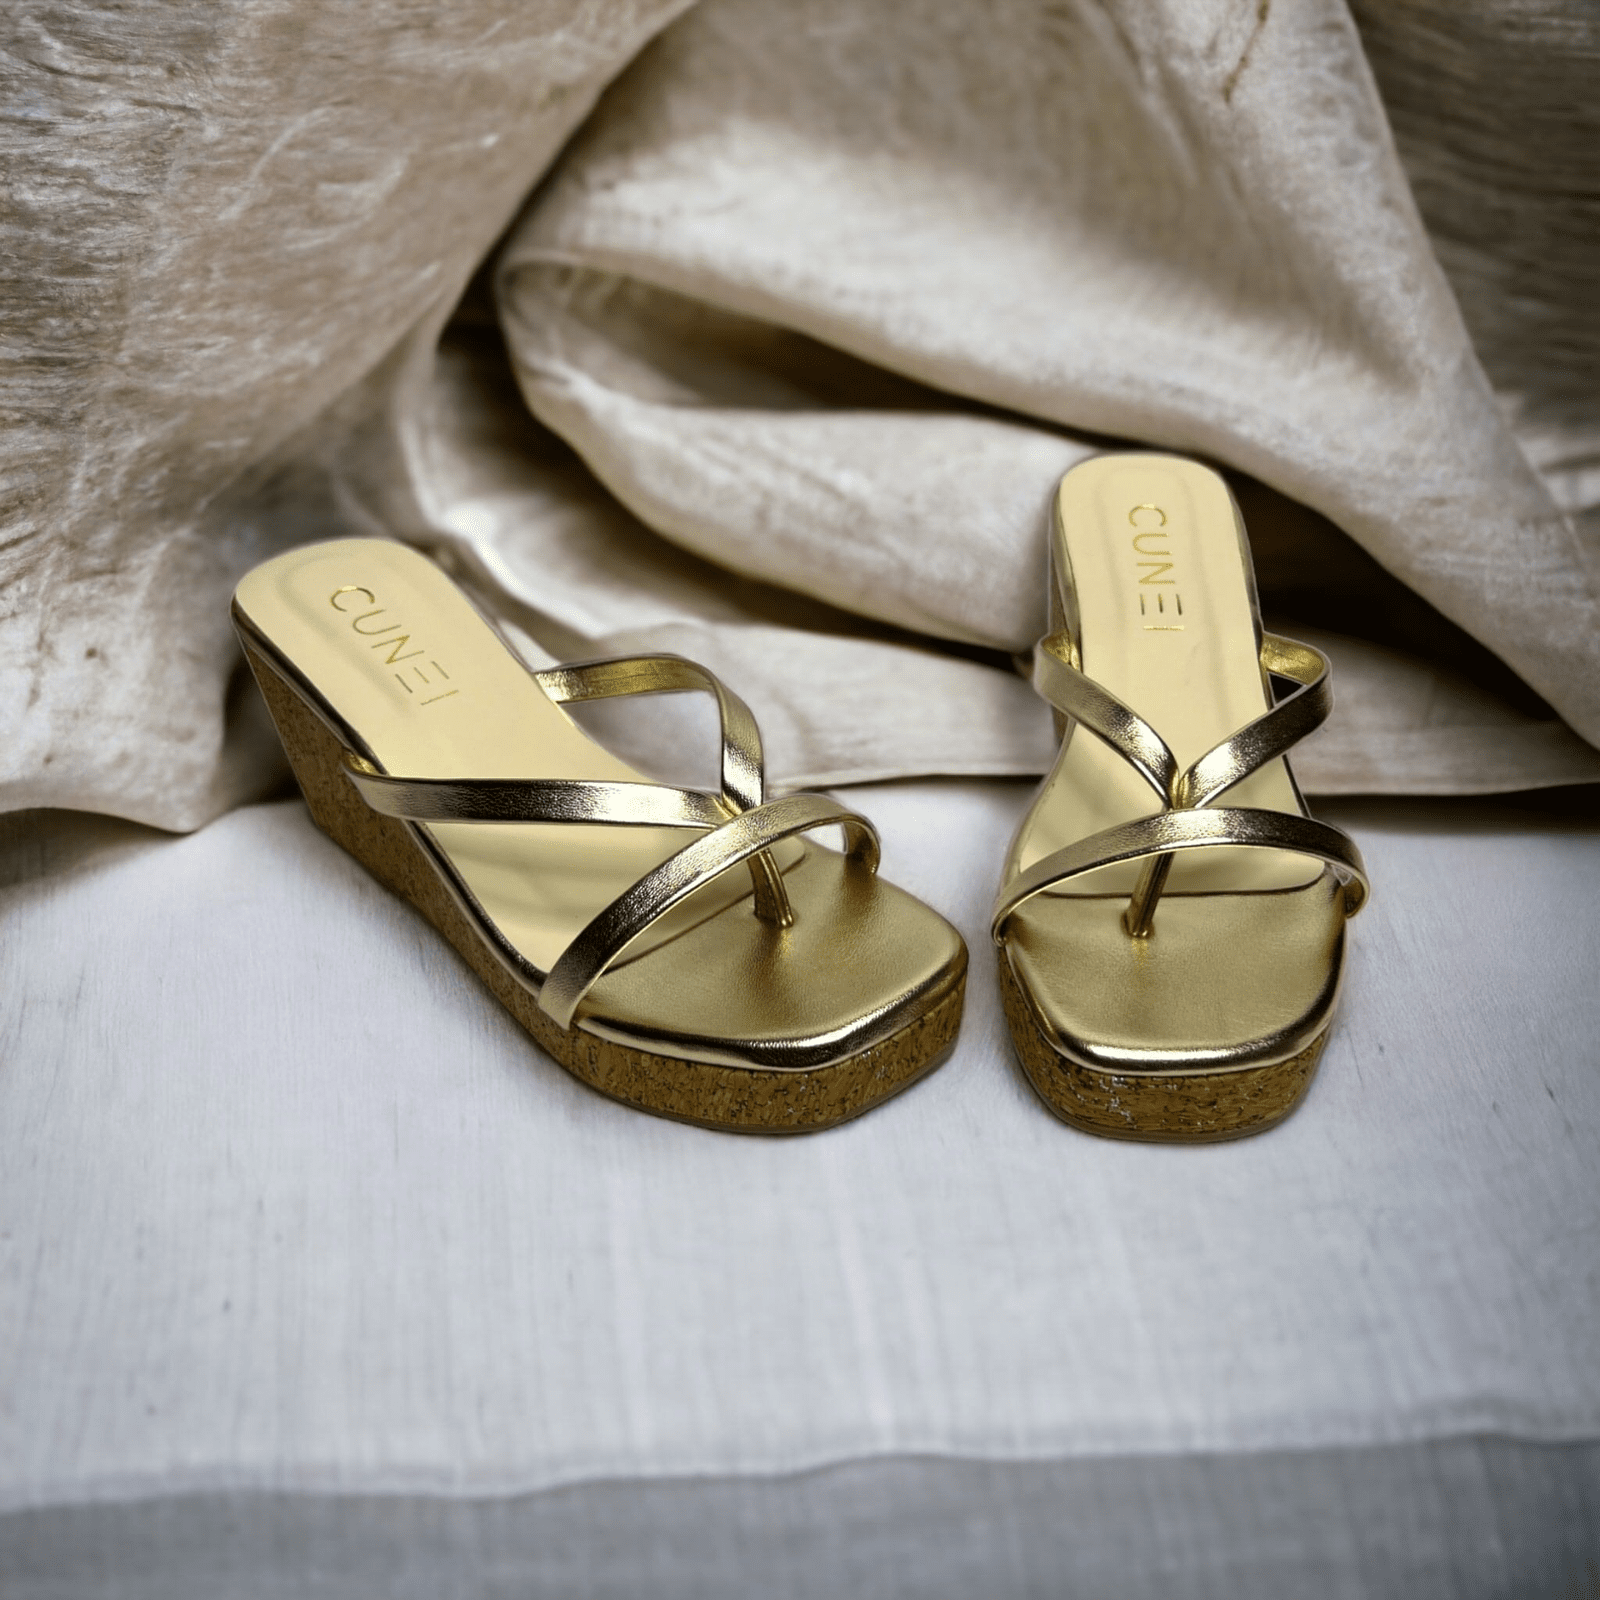 Sleek and Stylish Golden Wedges - Wedges